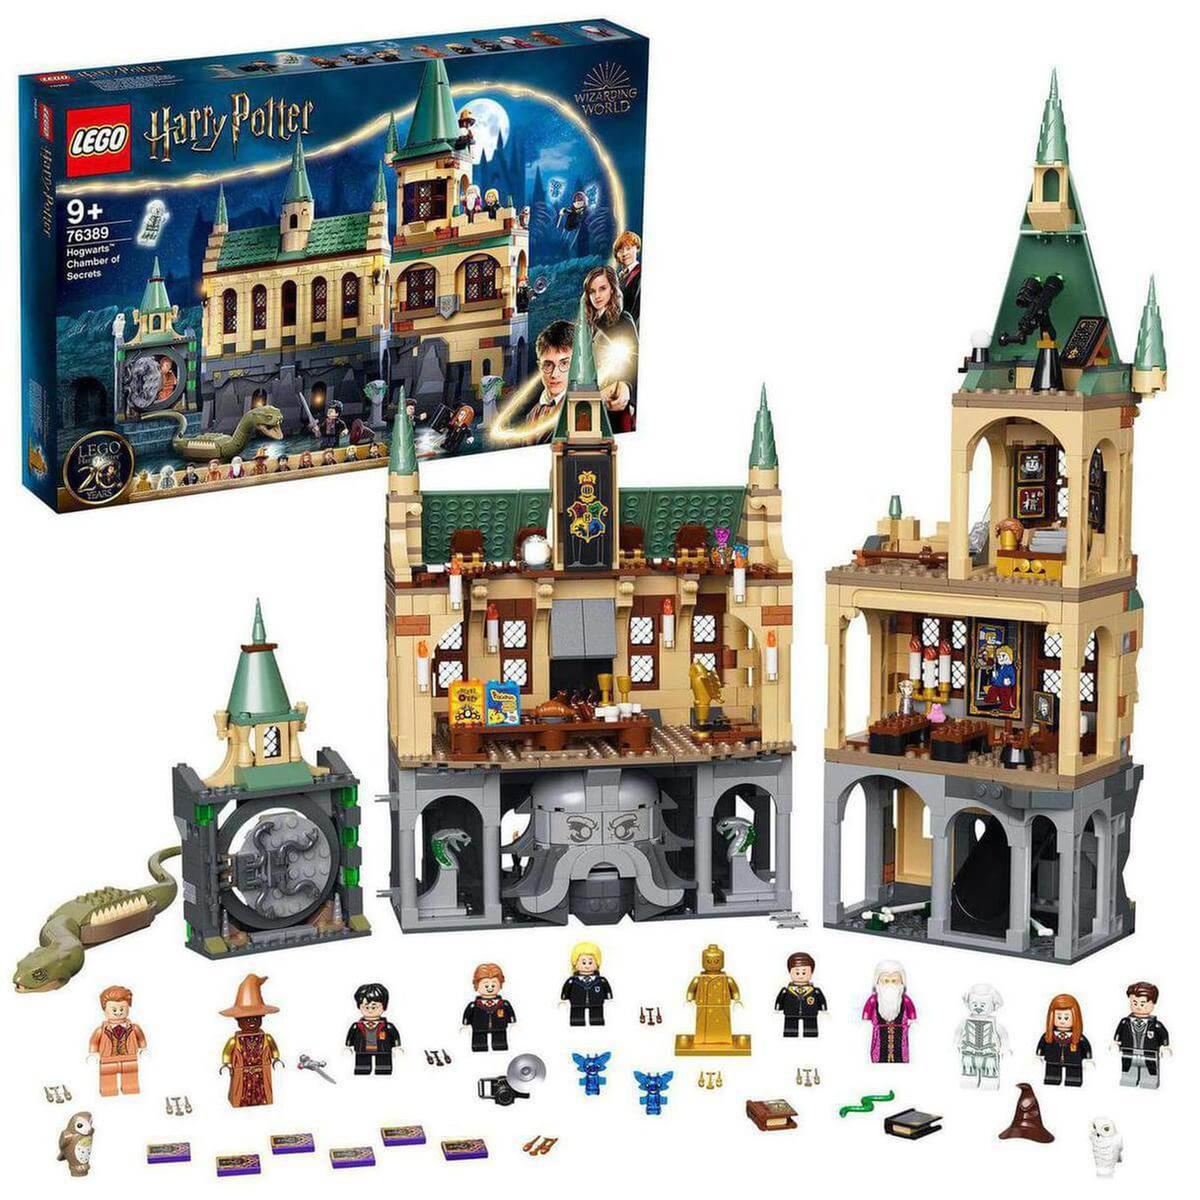 LEGO Harry Potter - Hogwarts: Cámara Secreta - 76389 | Lego Harry Potter |  Toys"R"Us España